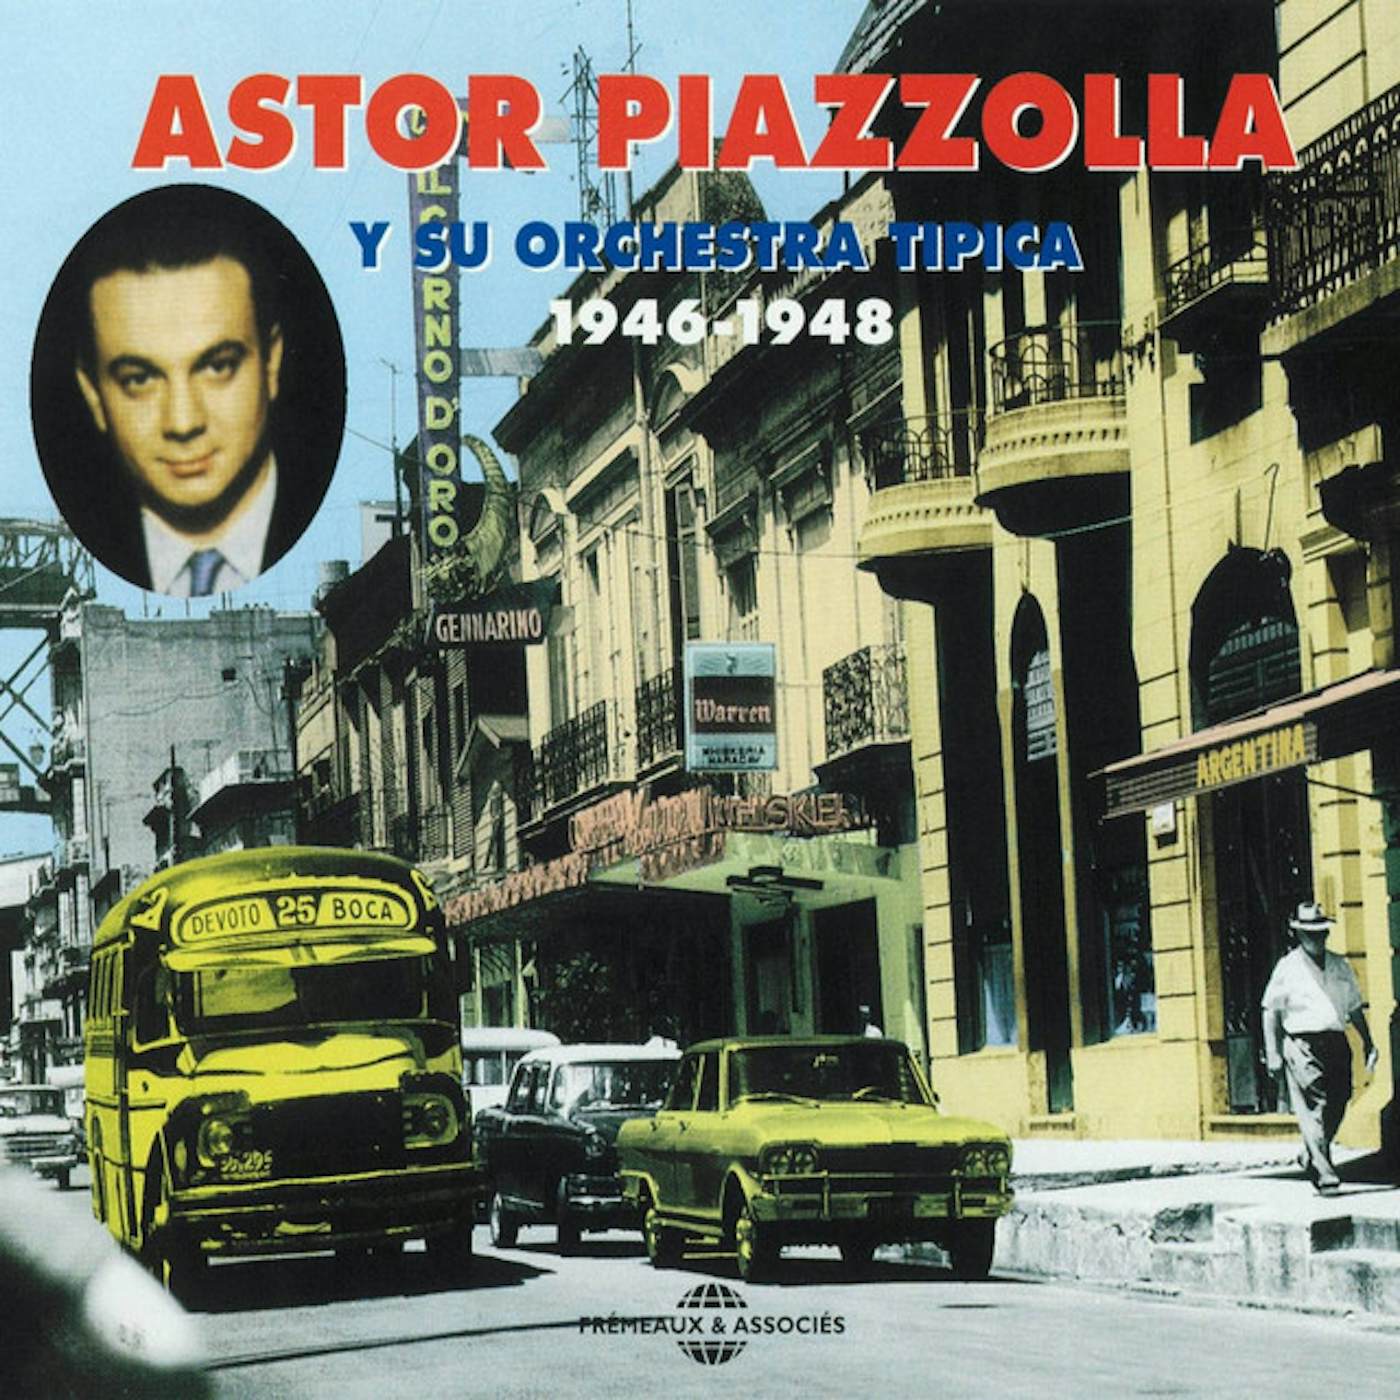 ASTOR PIAZZOLLA Y SU ORCHESTRA TIPICA 1946-1948 CD